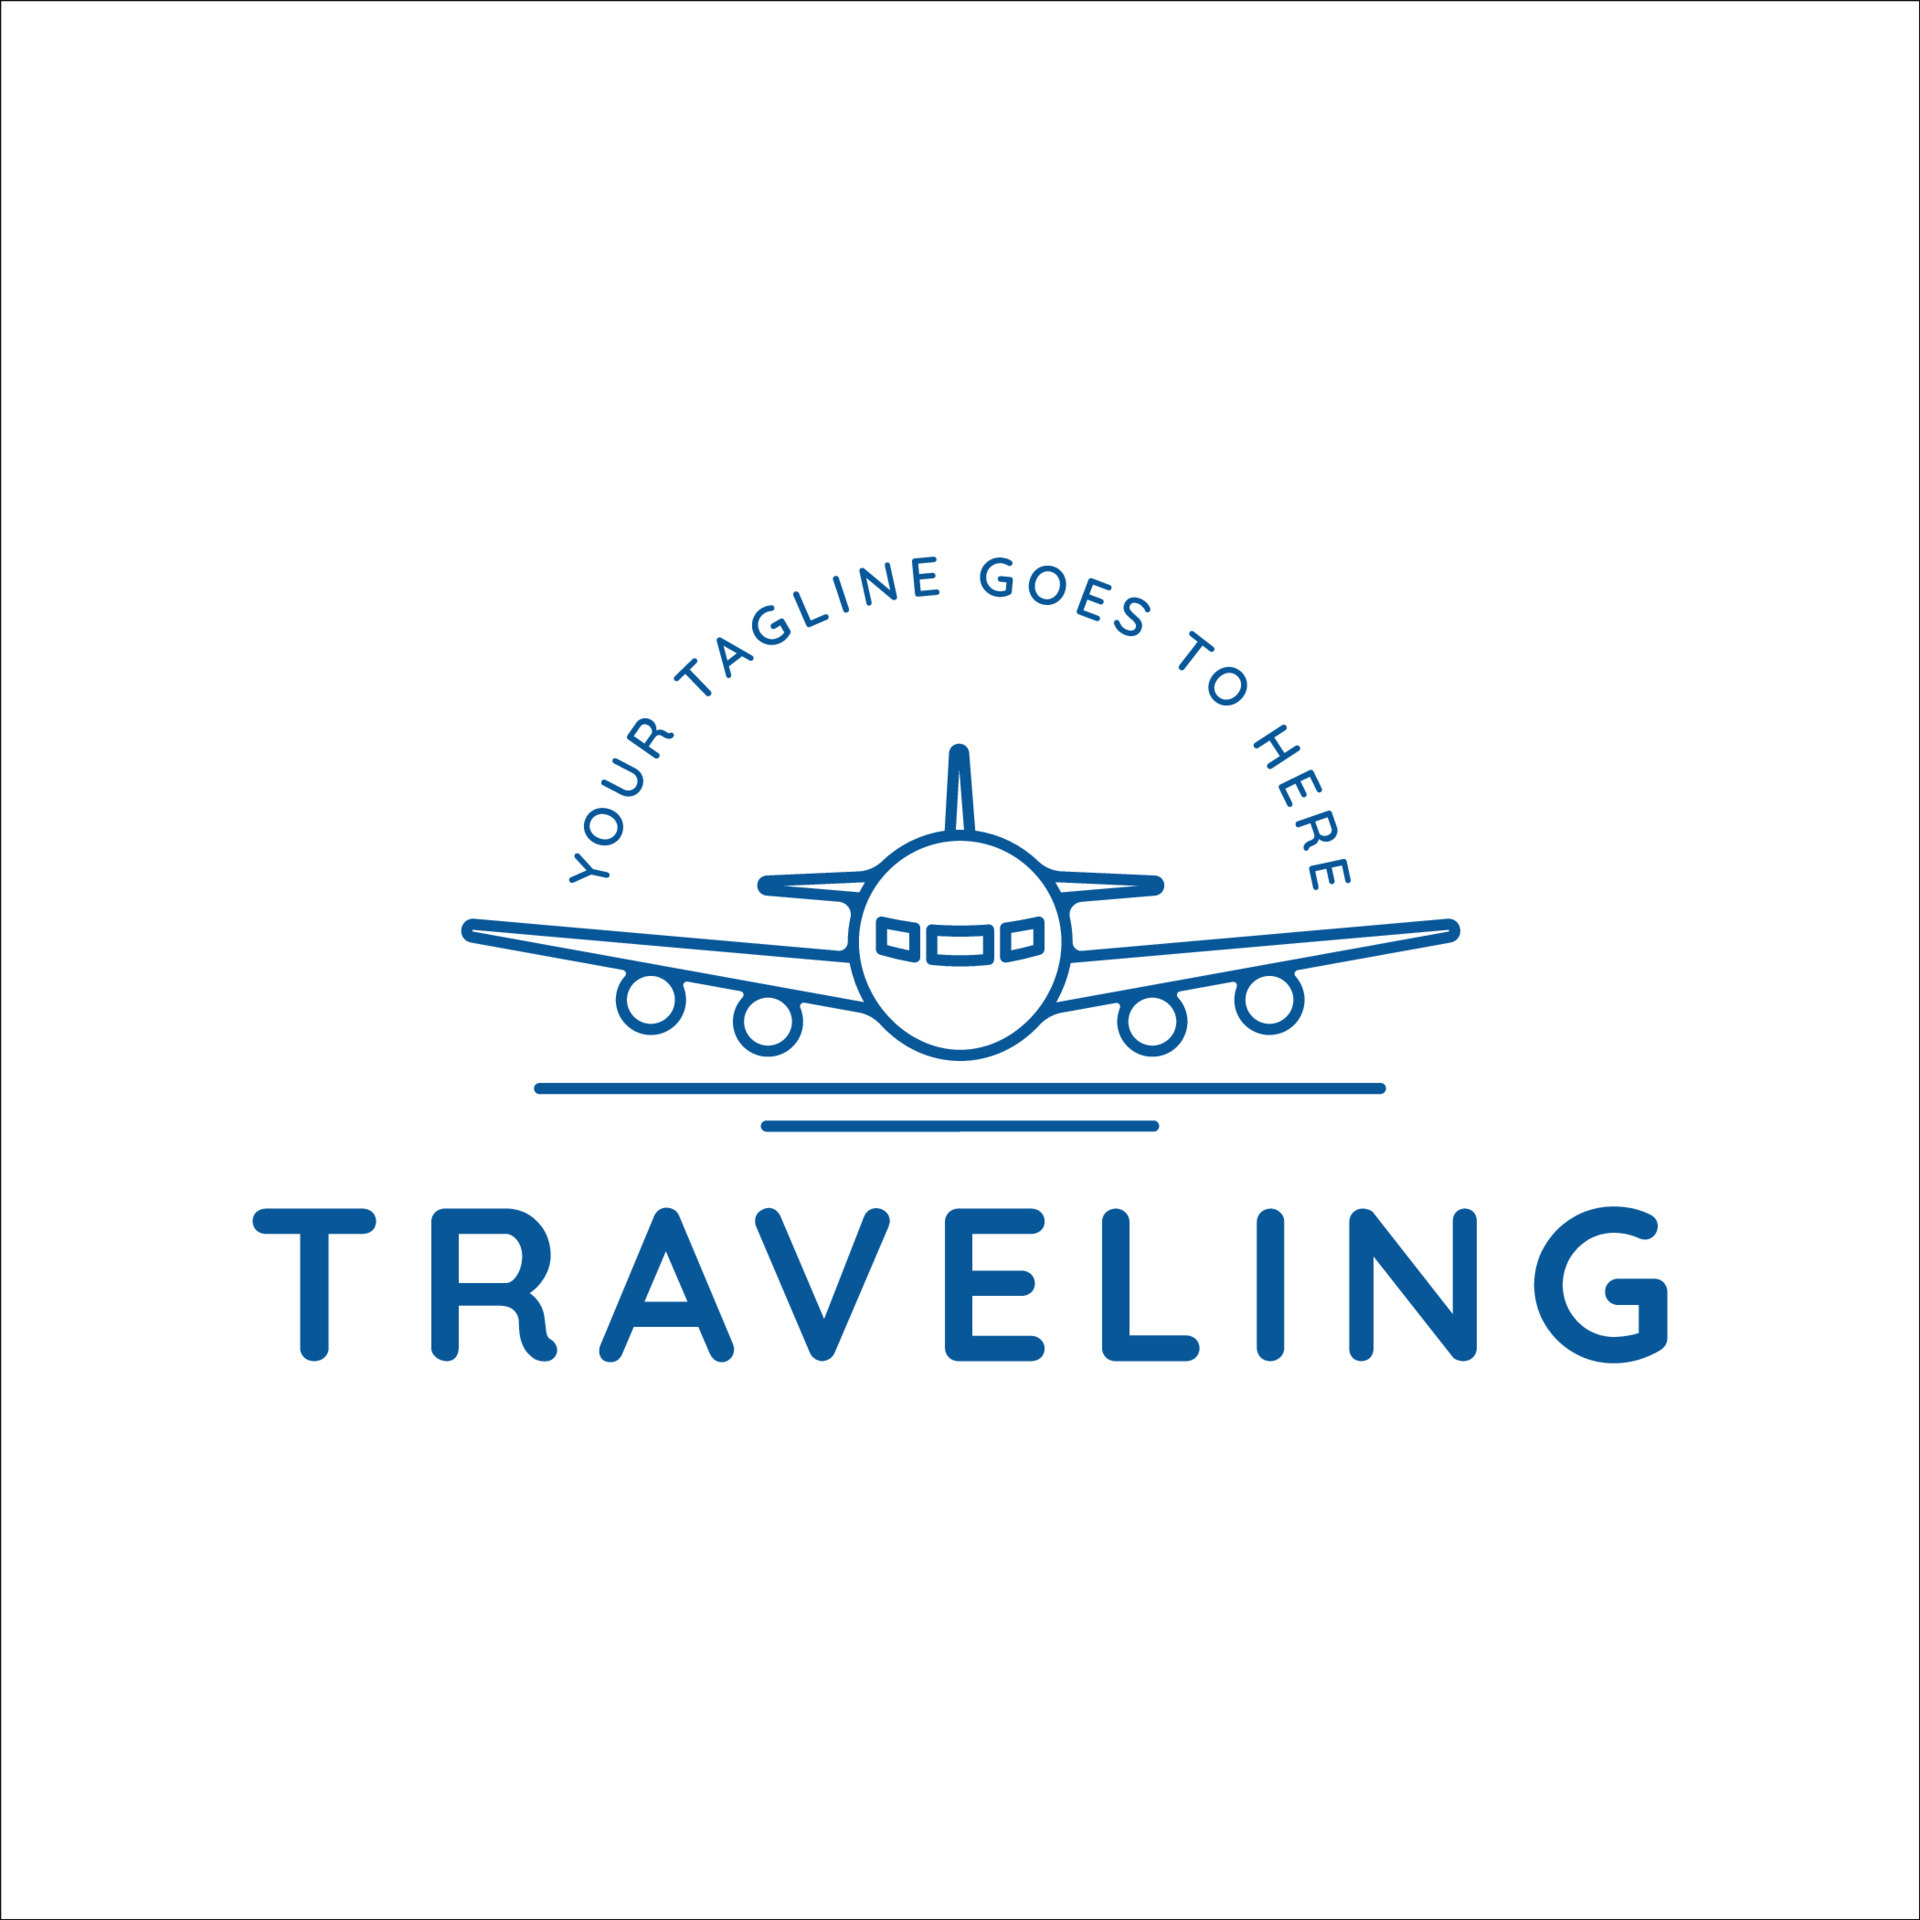 Modelo de design de logotipo de estilo de linha aérea de avião para marca  ou empresa e outros